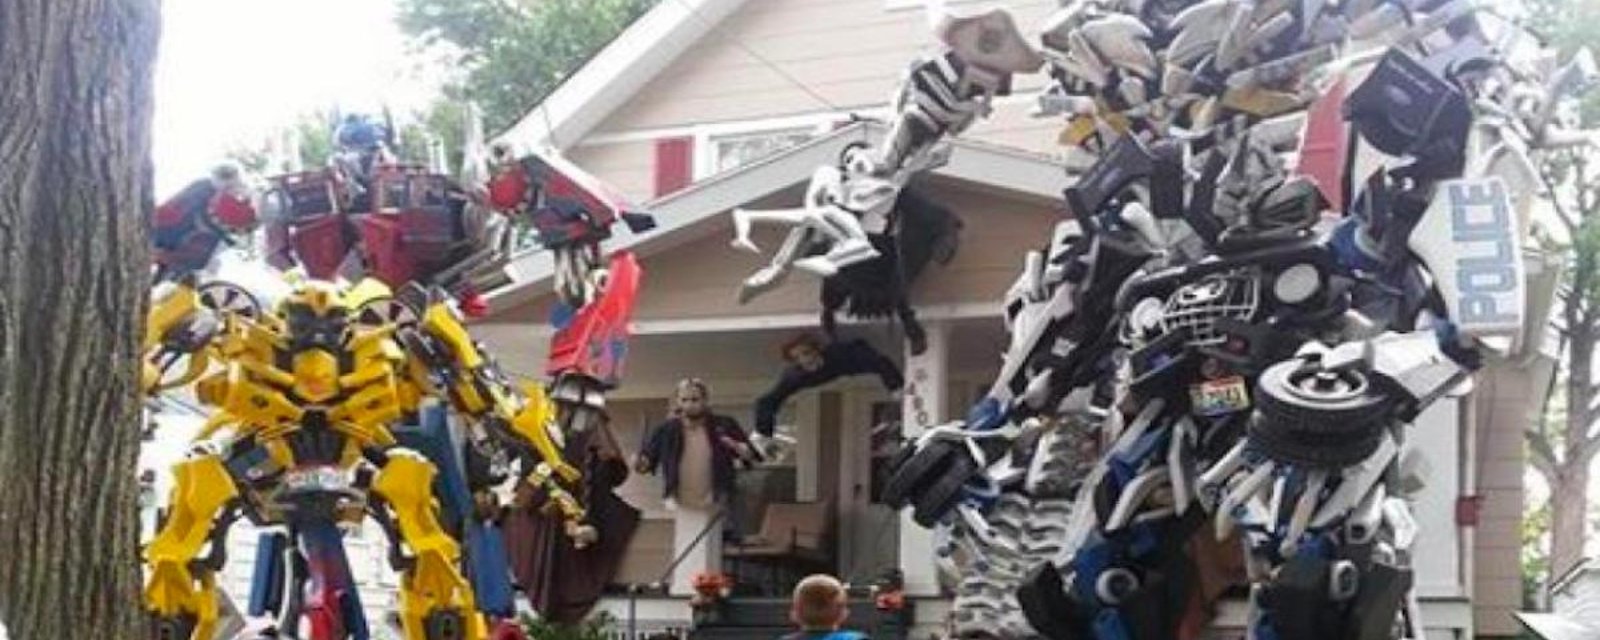 12 décorations d'Halloween qui épateront tout votre voisinage!